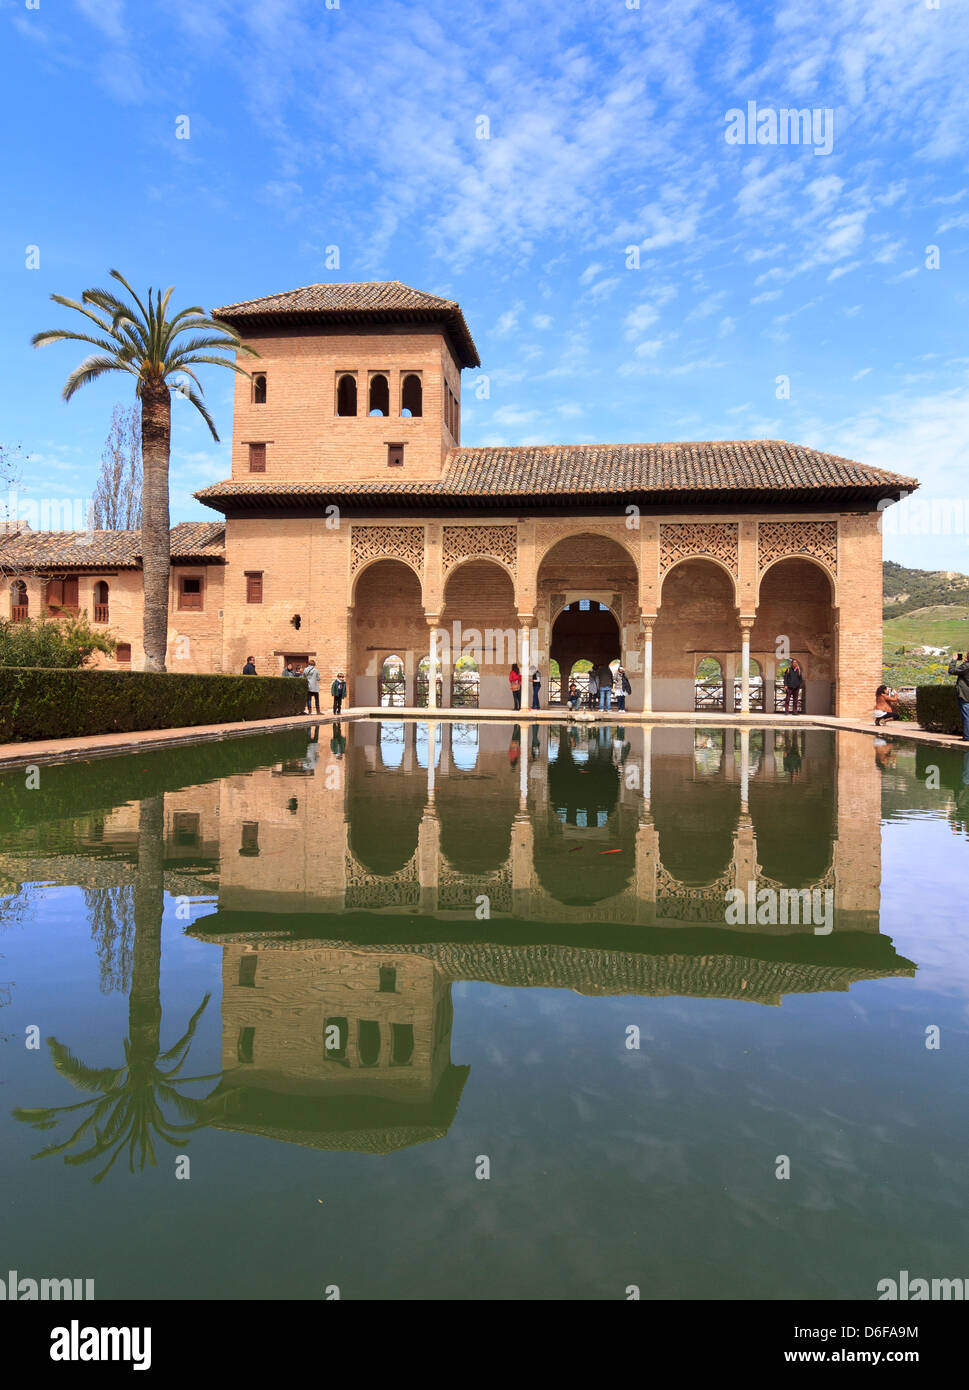 Palacio del Partal, Partal Palace, , Jardines del Partal, the Partal Gardens, Alhambra, Granada, Spain Stock Photo